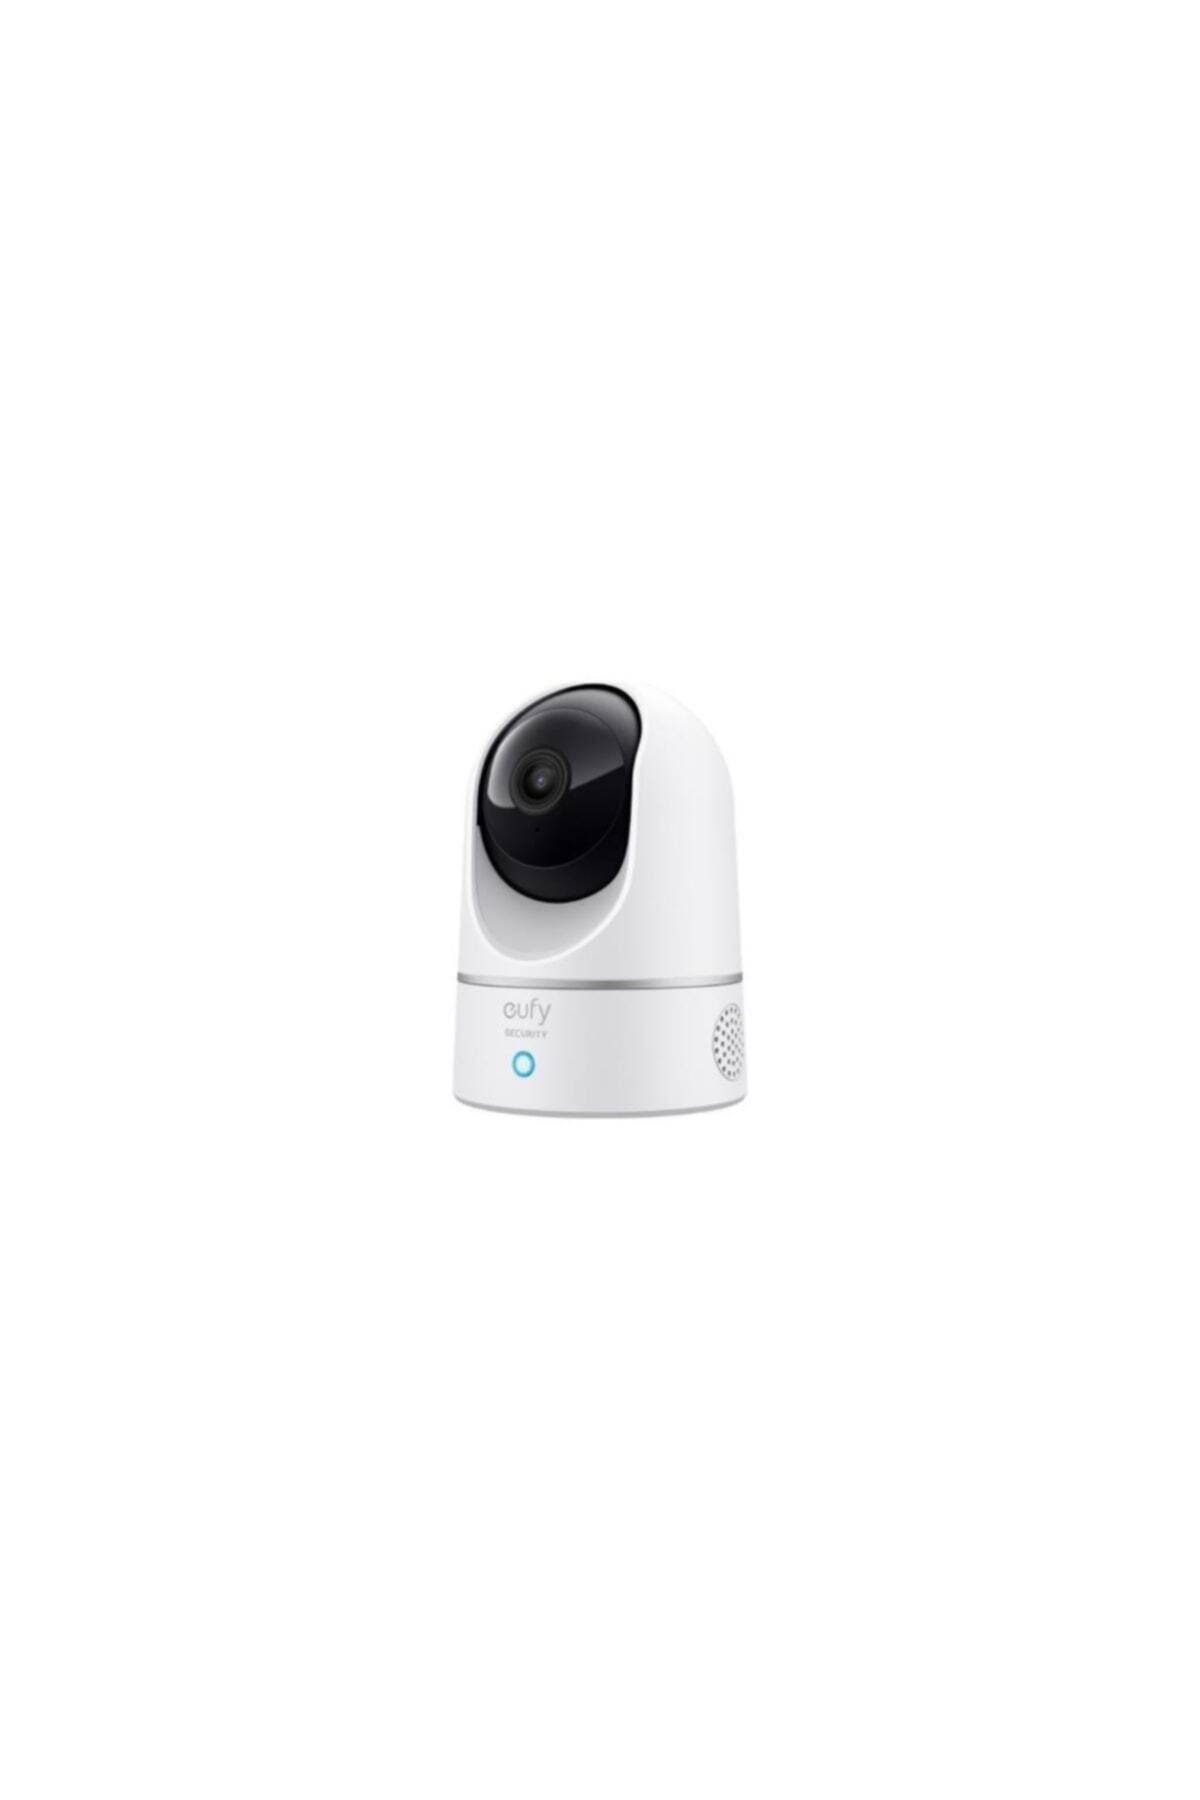 Anker Eufy Security 360 Derece Dönebilen Kızılötesi Gece Görüşlü Ip Kamera 2k Hd Çözünürlük - T8410